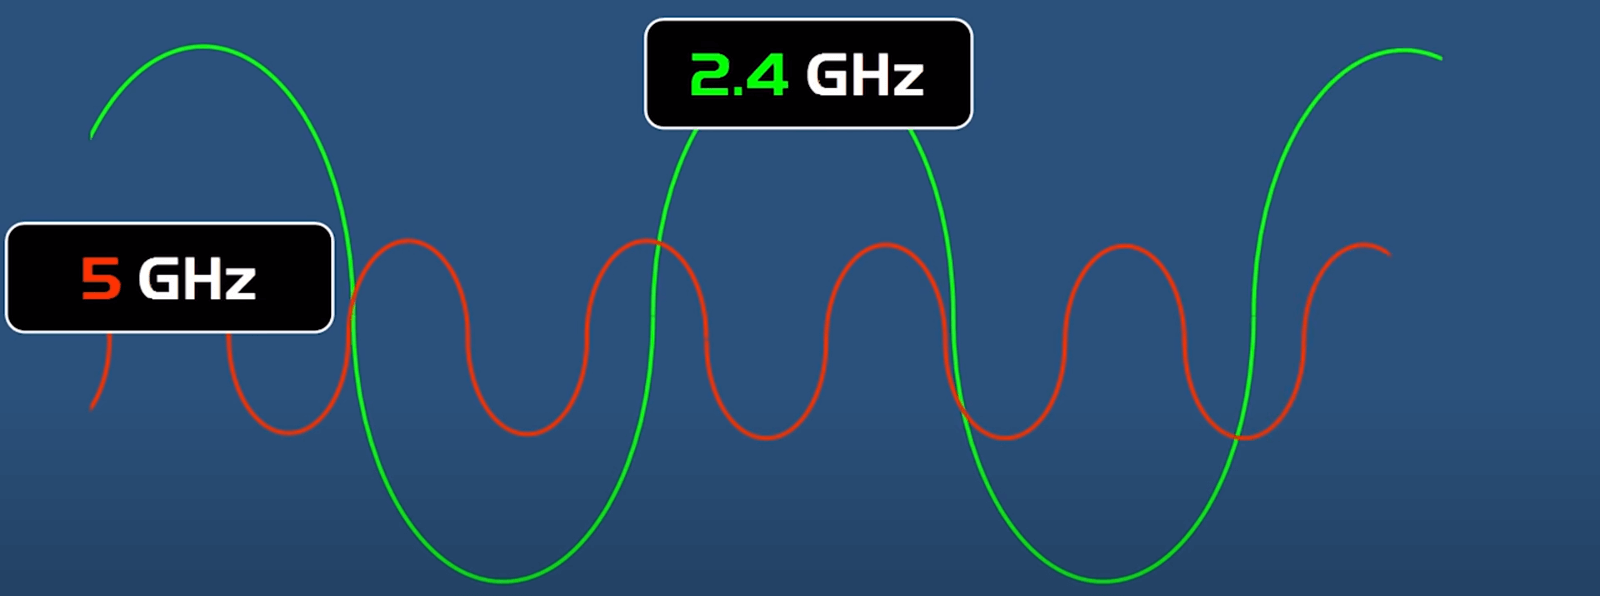 Băng tần 2.4GHz và 5GHz là gì? Sự khác biệt giữa băng tần 2.4GHz và 5GHz